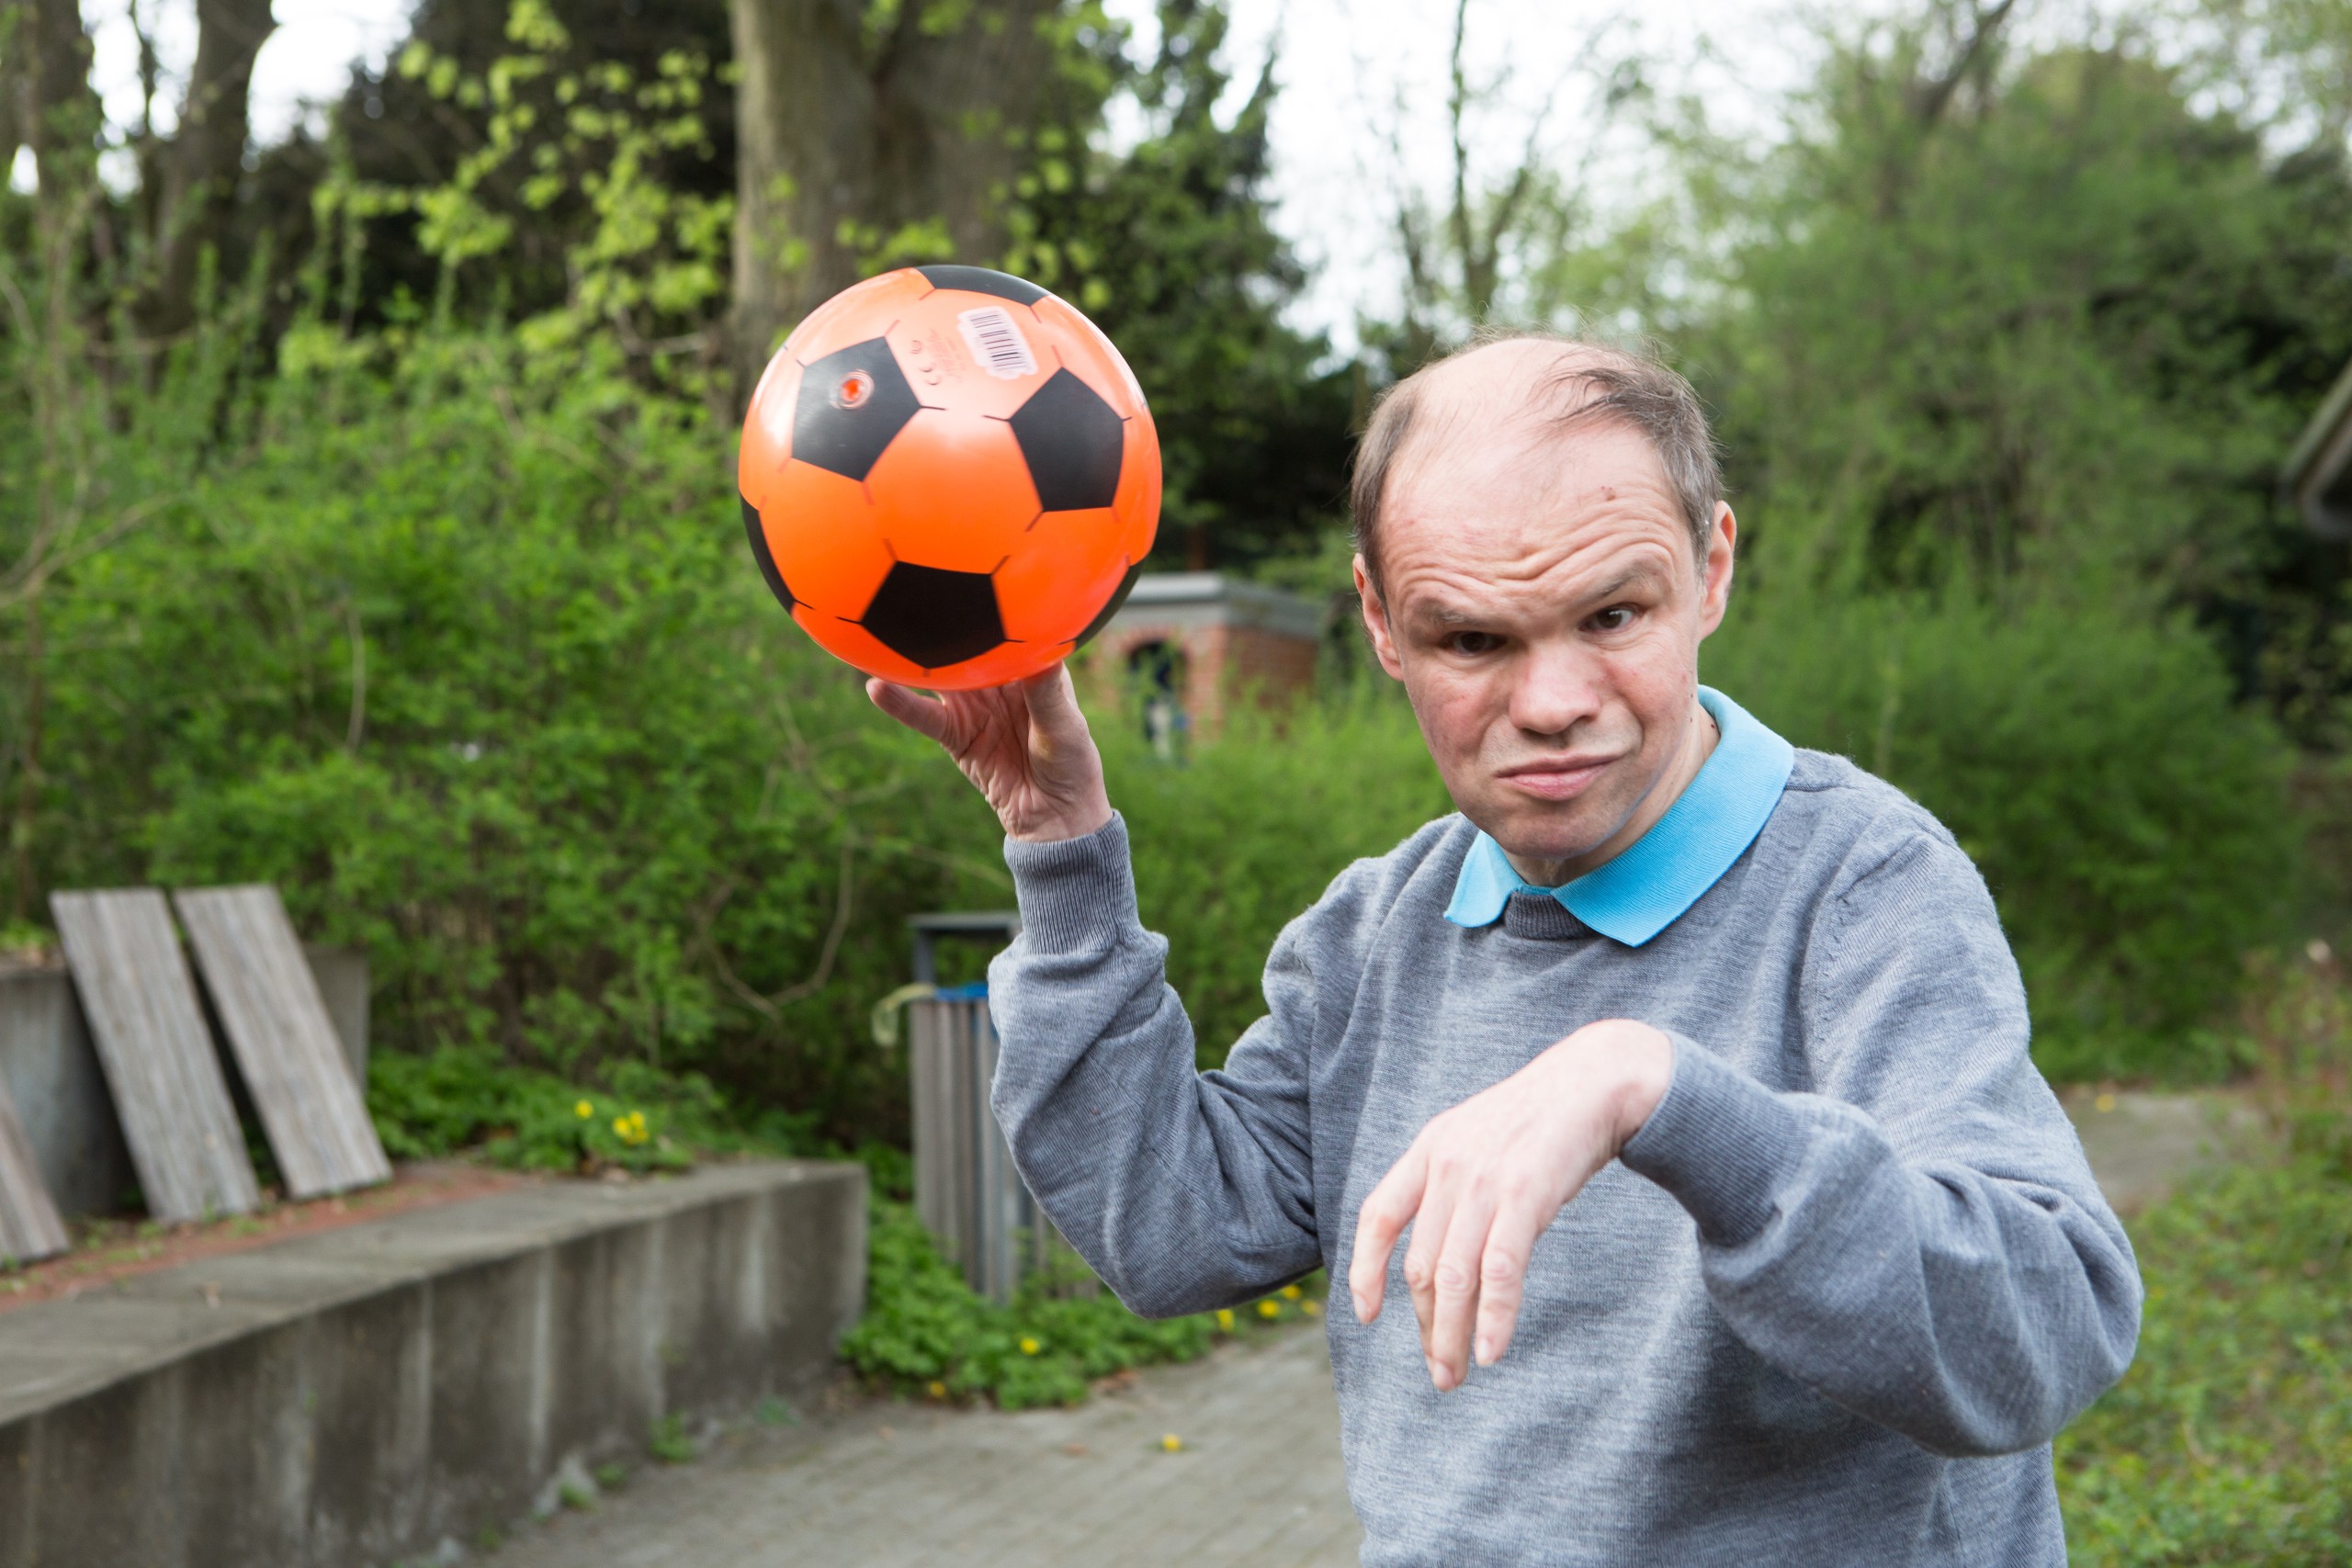 Mensch mit Behinderung spielt mit Ball